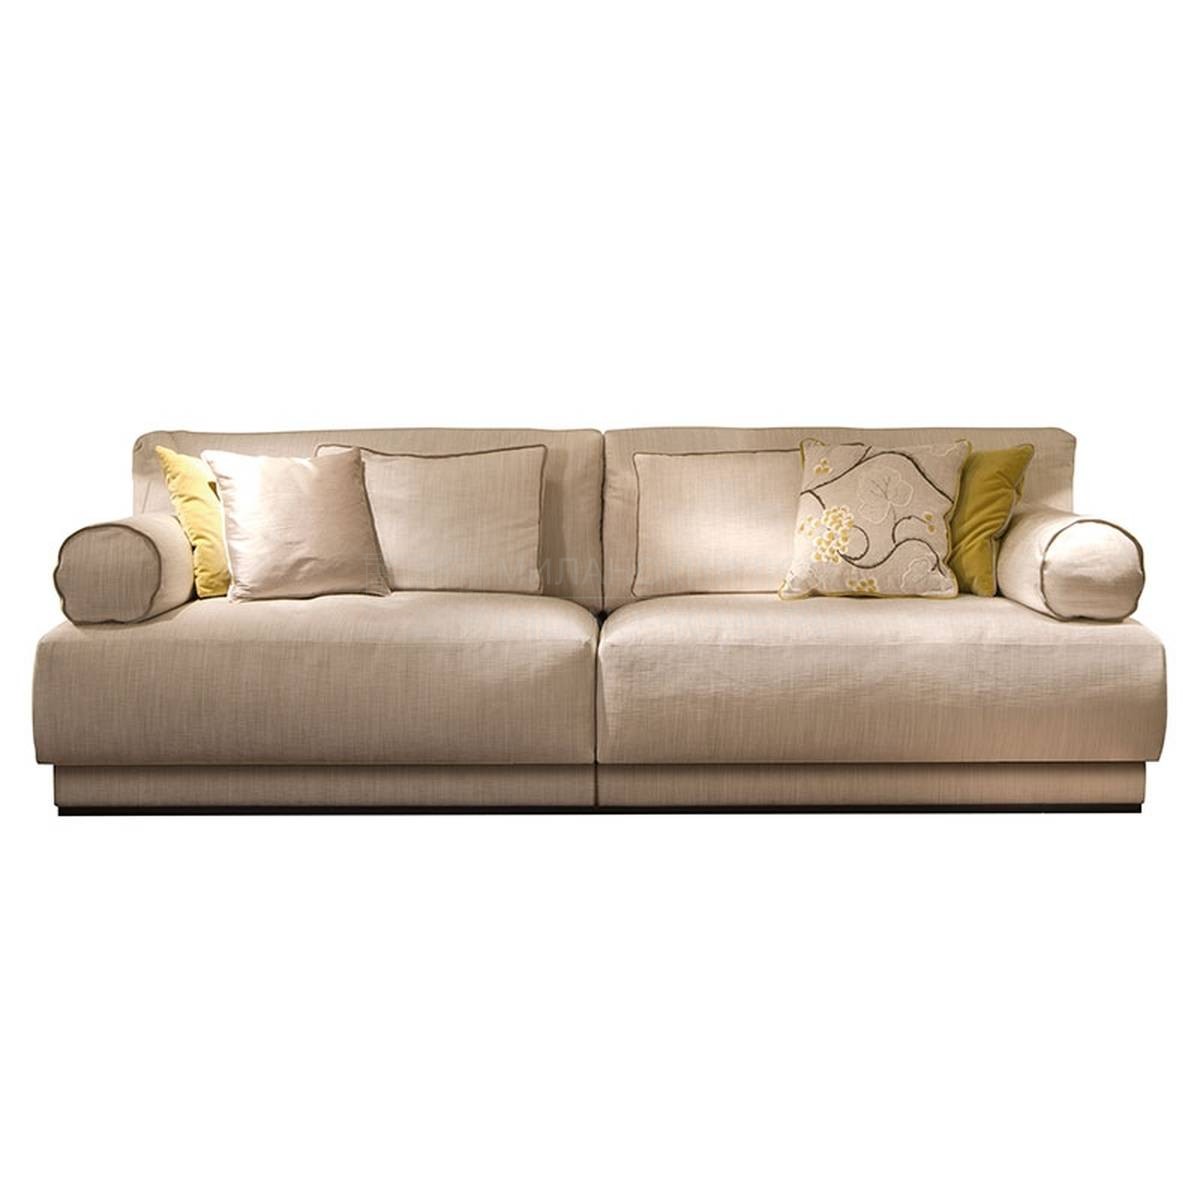 Модульный диван Ludo/ sofa из Италии фабрики SOFTHOUSE